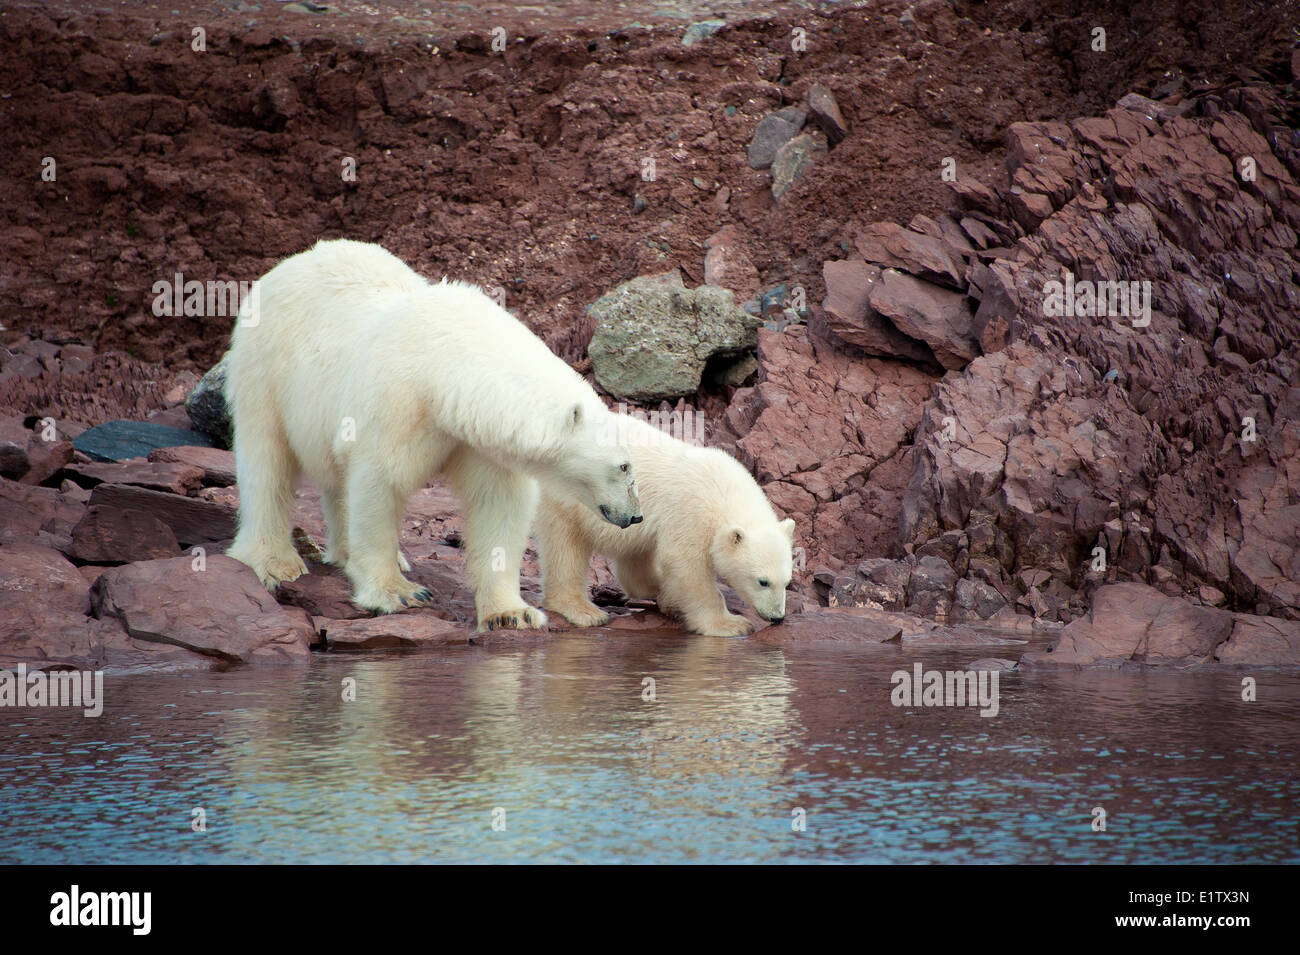 Madre di orso polare (Ursus maritimus) e yearling cub, arcipelago delle Svalbard, artico norvegese Foto Stock